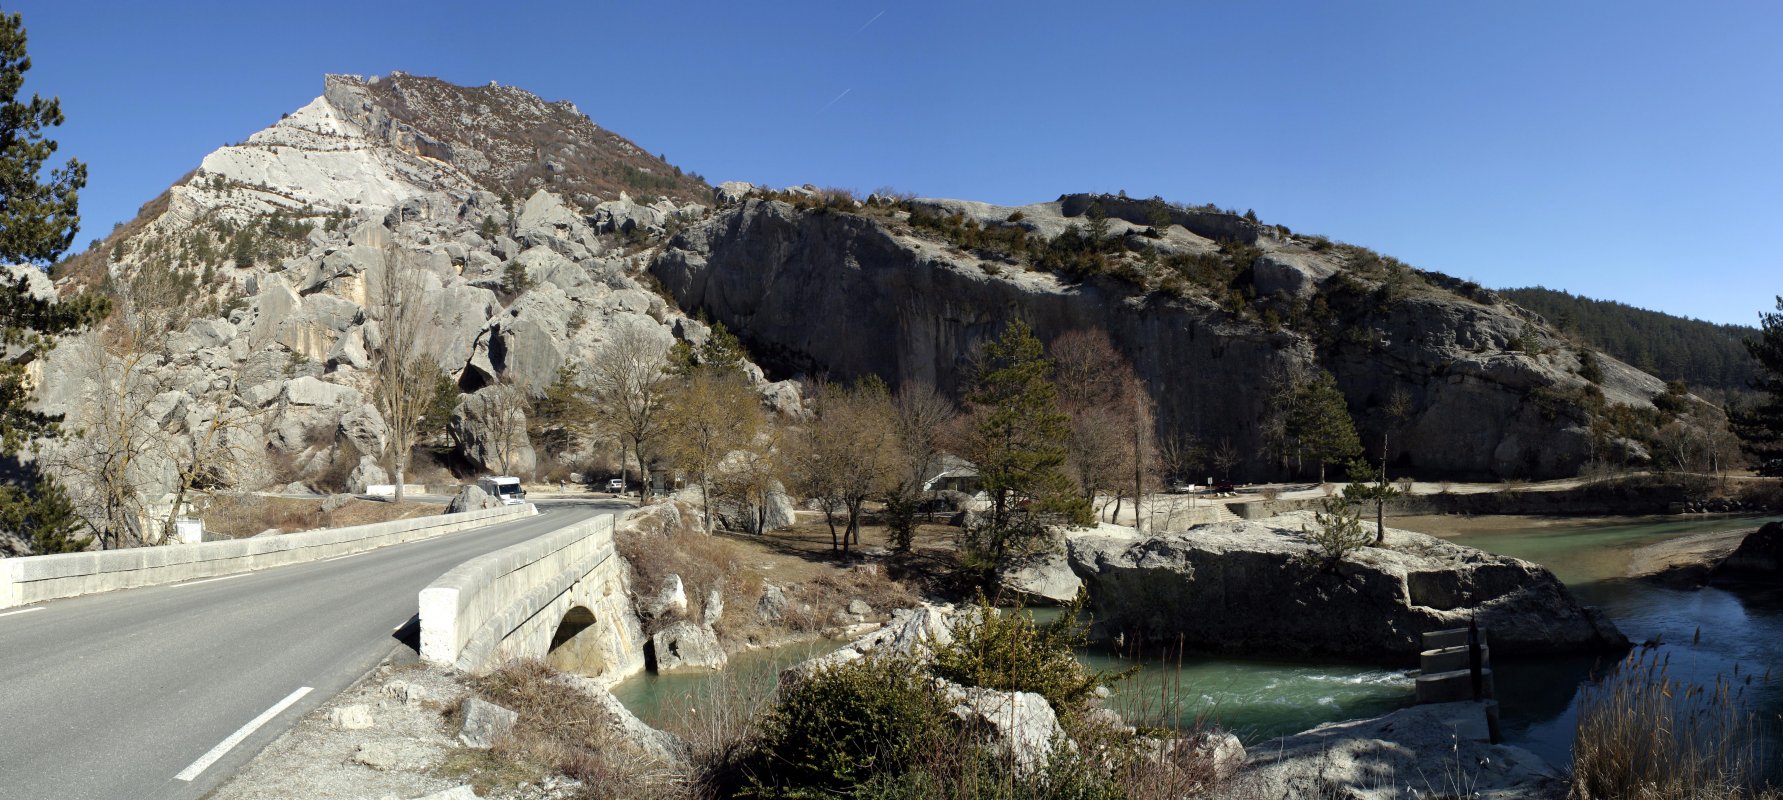 Le claps de Luc en Diois : cet amoncellement chaotique de rochers  résulte de l'éboulement du flanc sud du Pic de Luc. Le barrage né de cet amas de pierres est responsable de la présence de deux lacs sur lit de la rivière Drôme.